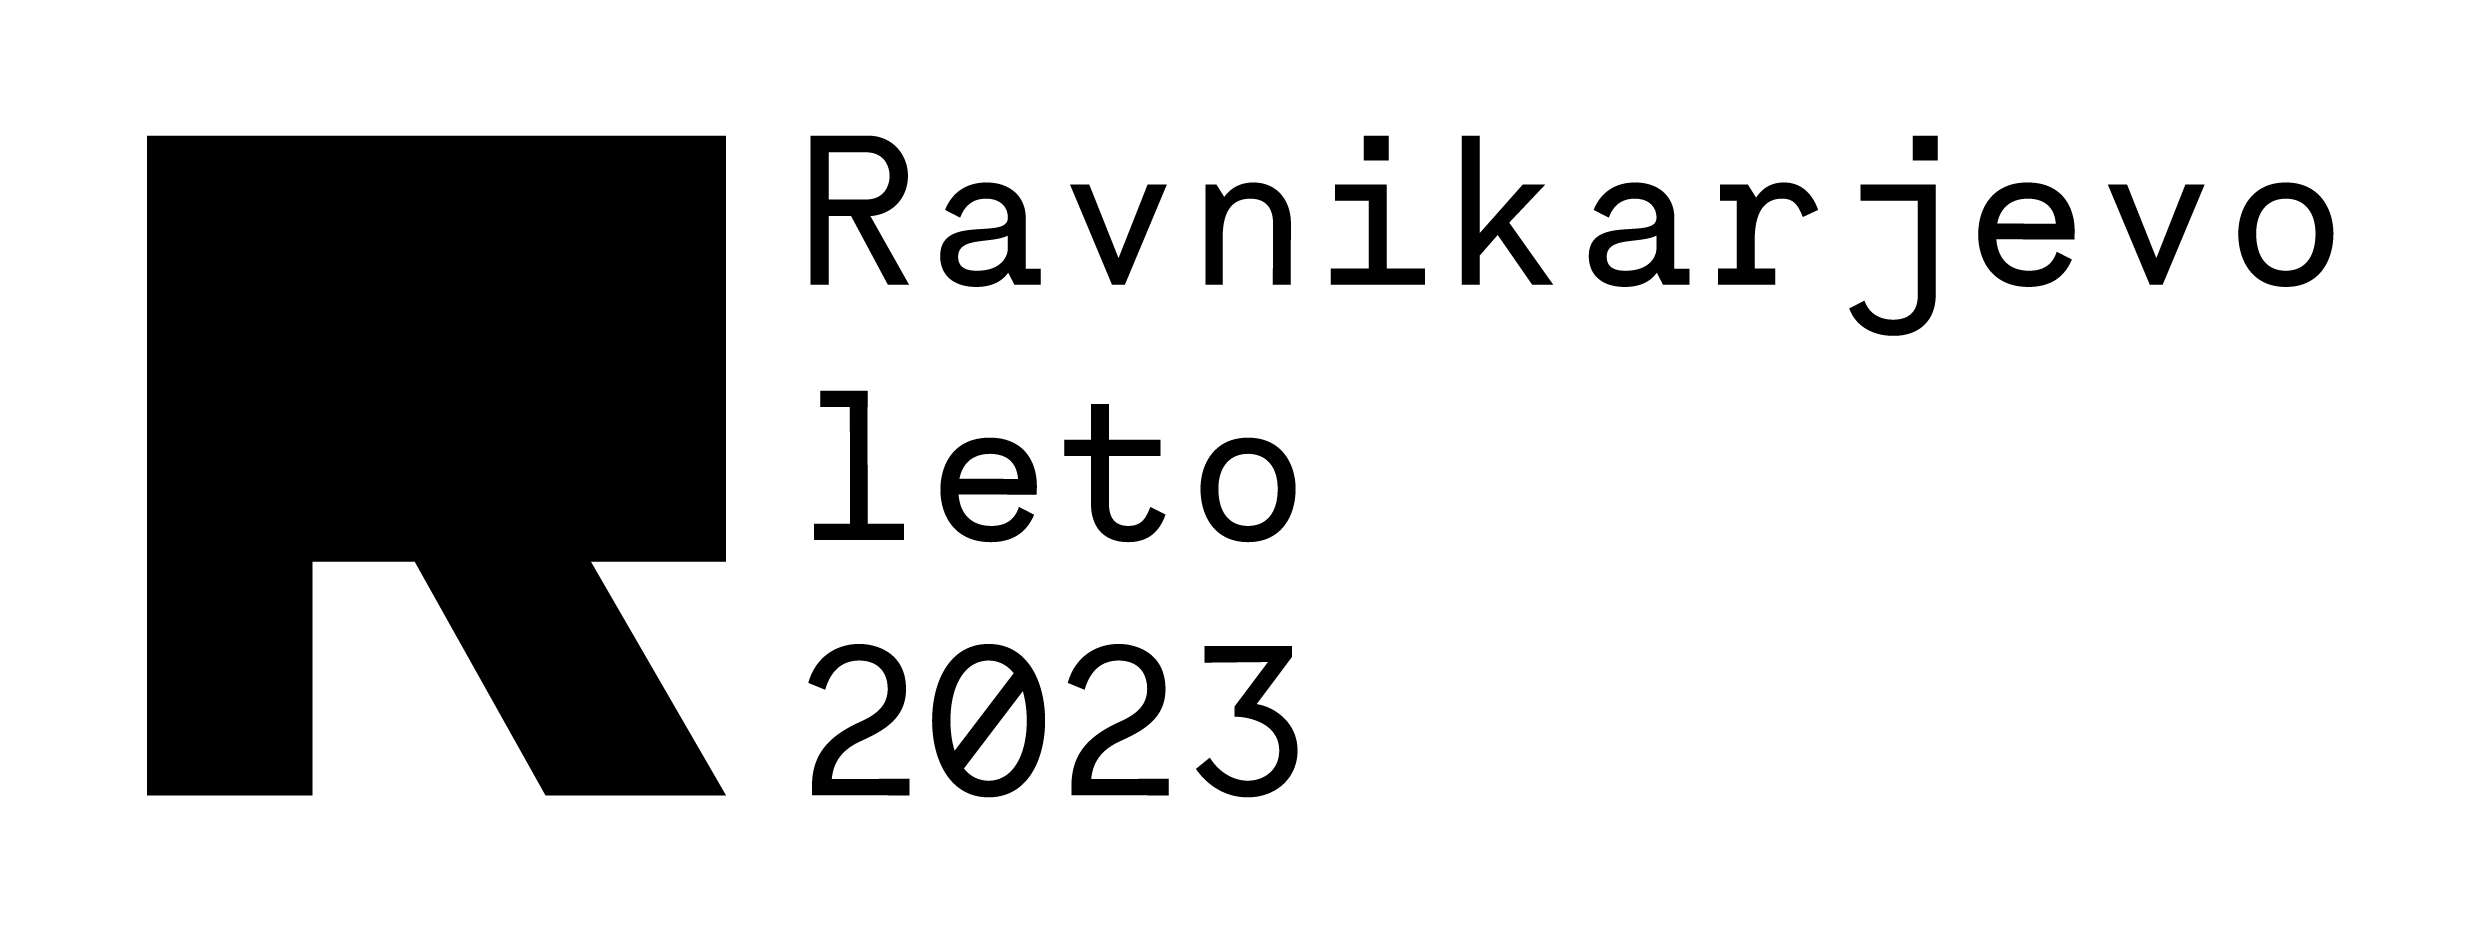 Logotip Ravnikarjevega leta 2023